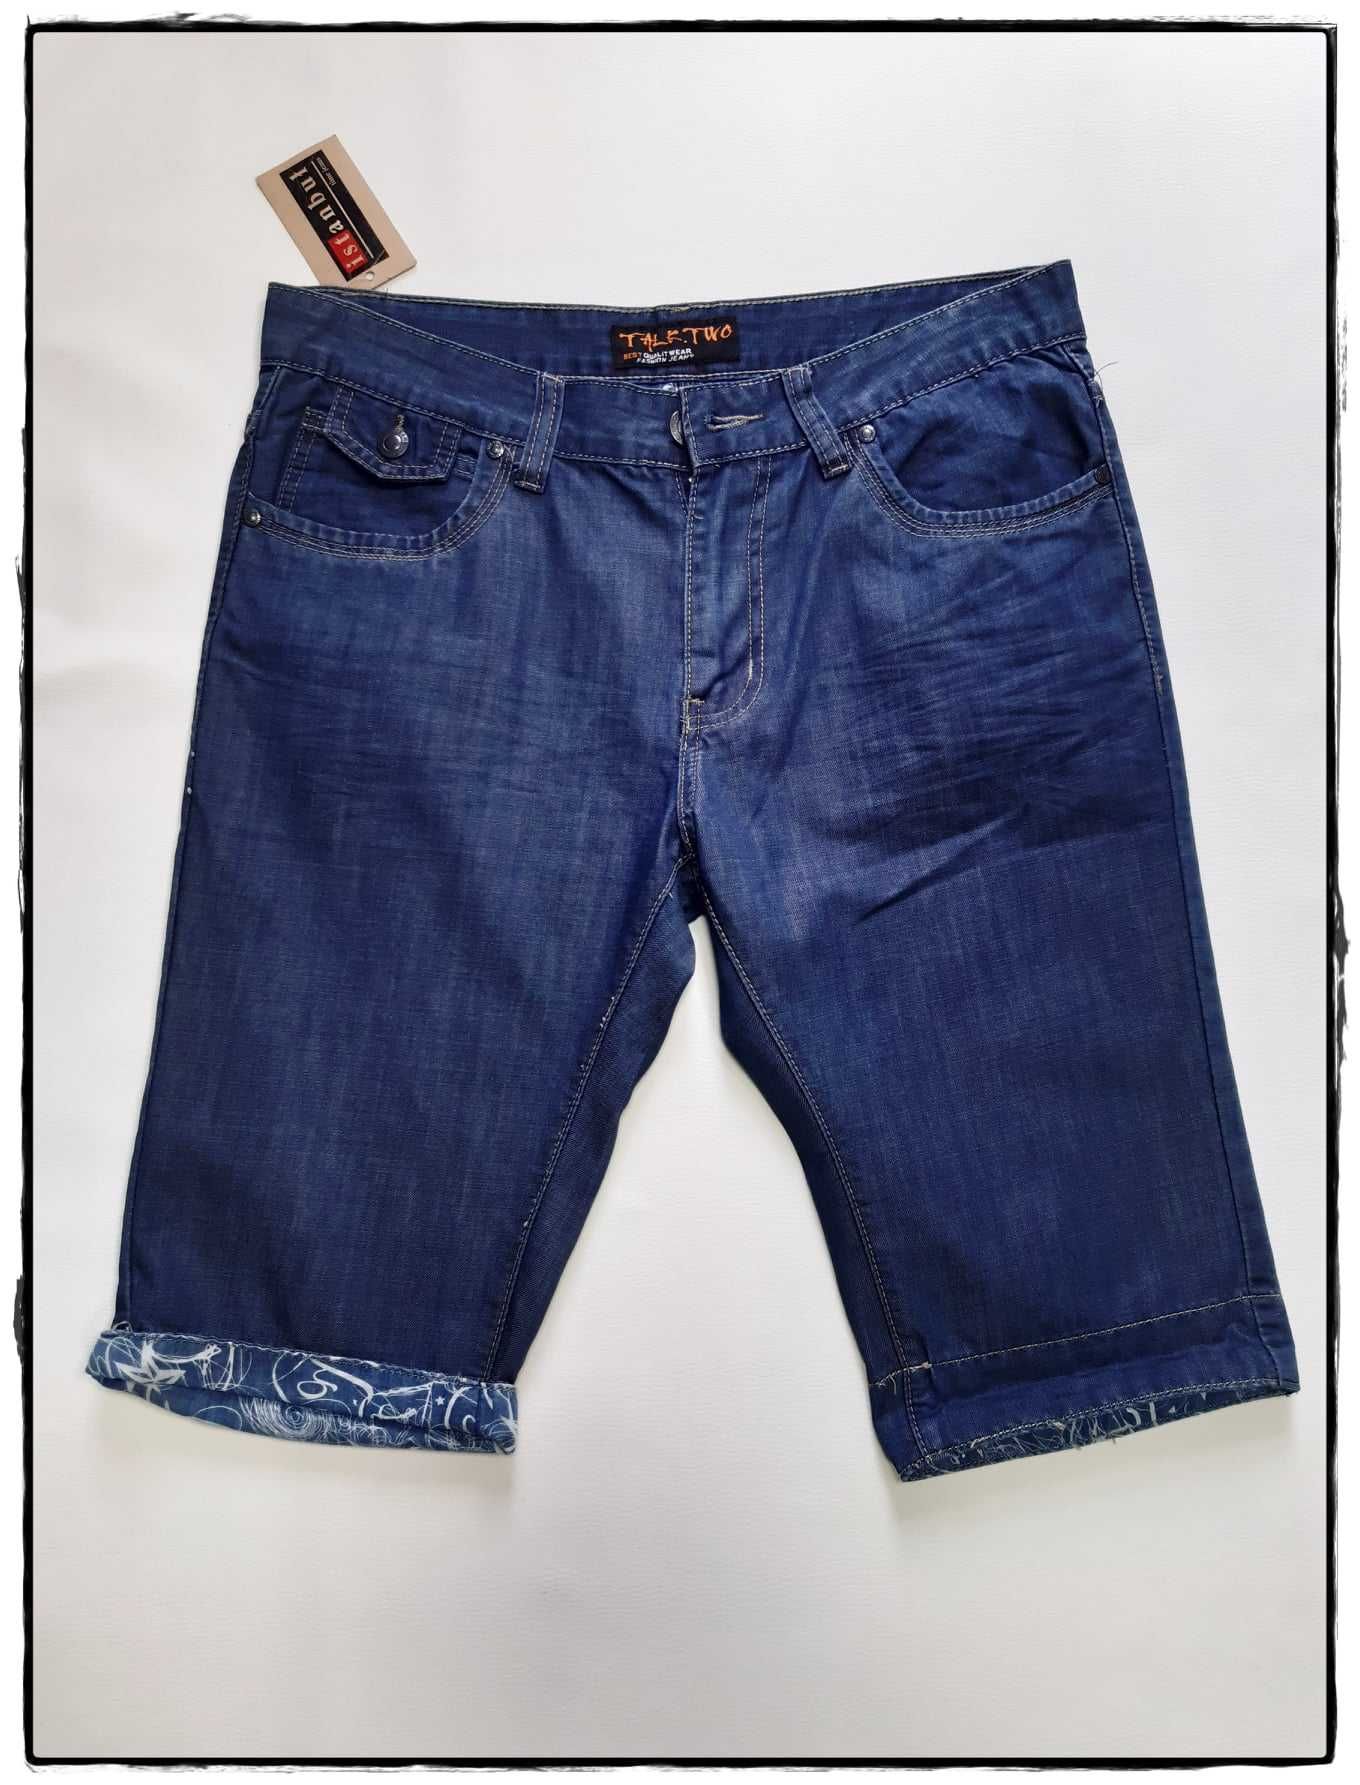 Męskie/chłopięce spodenki jeansowe Rozm 29